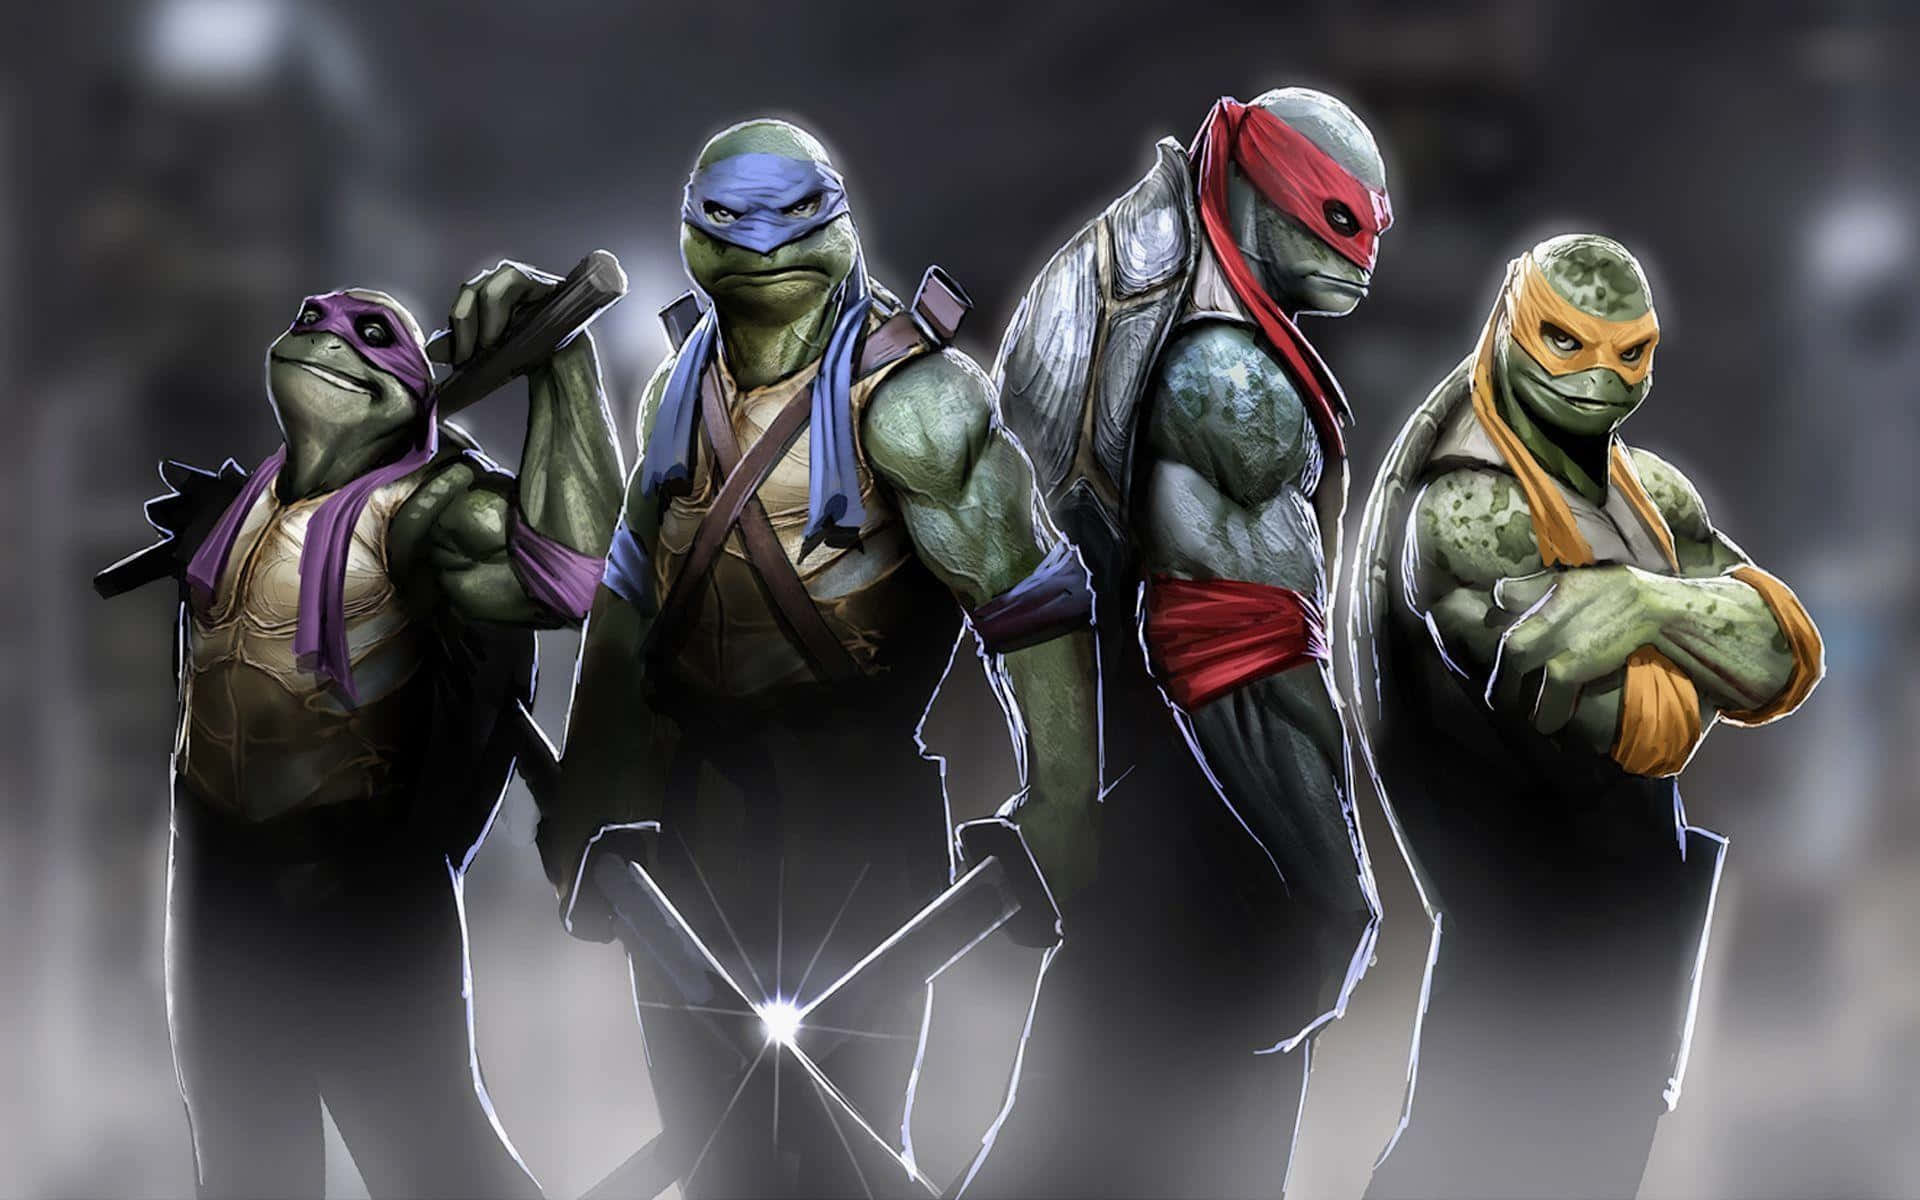 4é Melhor Do Que 1 - As 4 Tartarugas Ninja Adolescentes Mutantes